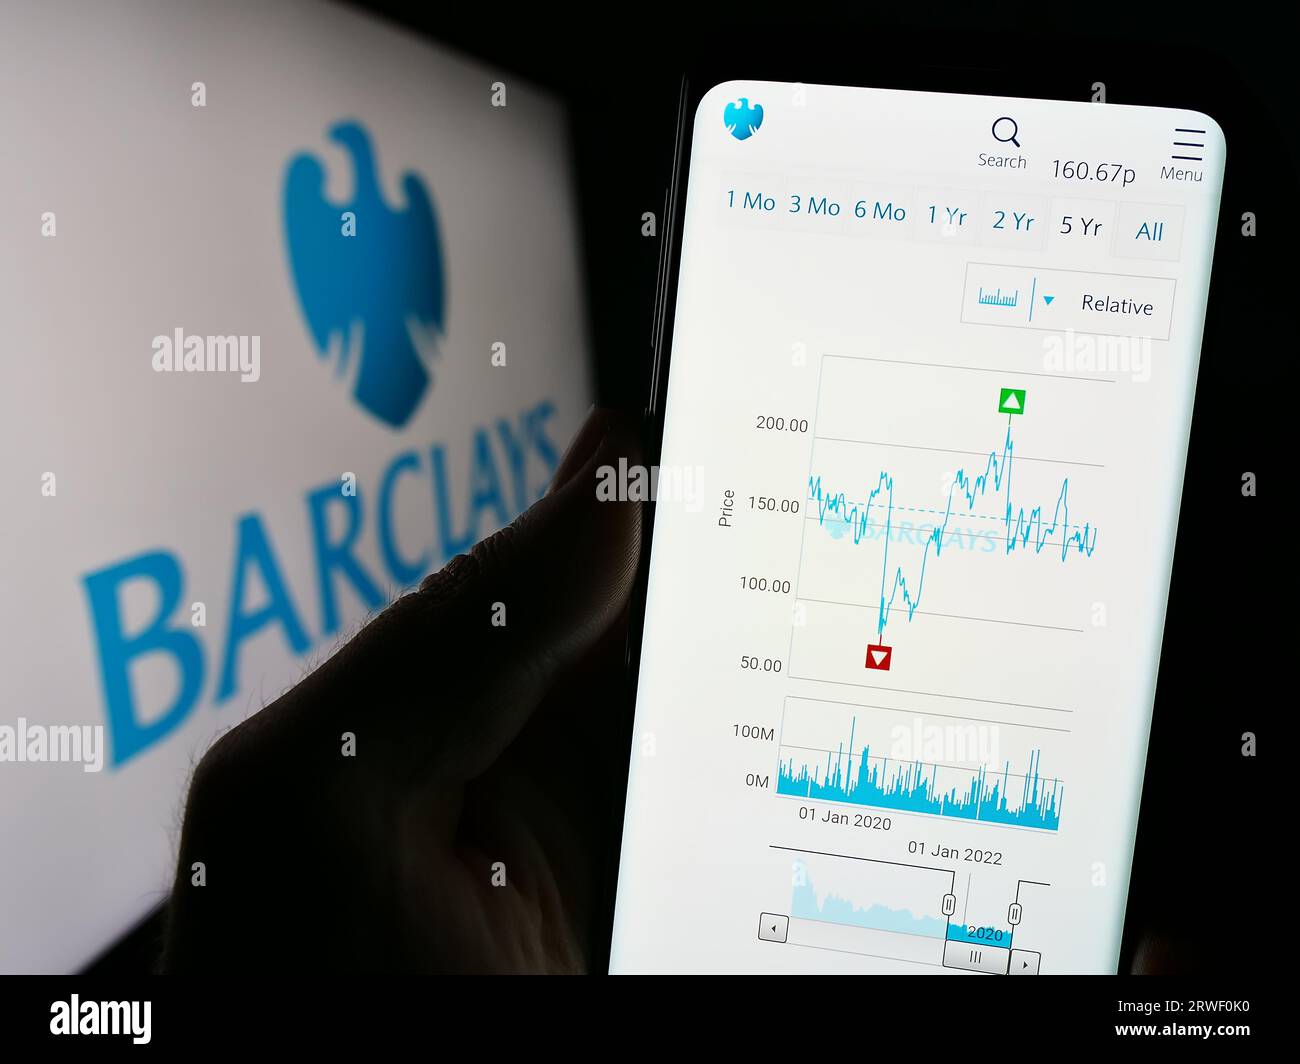 Persona in possesso di cellulare con pagina web della banca universale britannica Barclays plc sullo schermo davanti al logo dell'azienda. Concentrarsi sul centro del display del telefono. Foto Stock